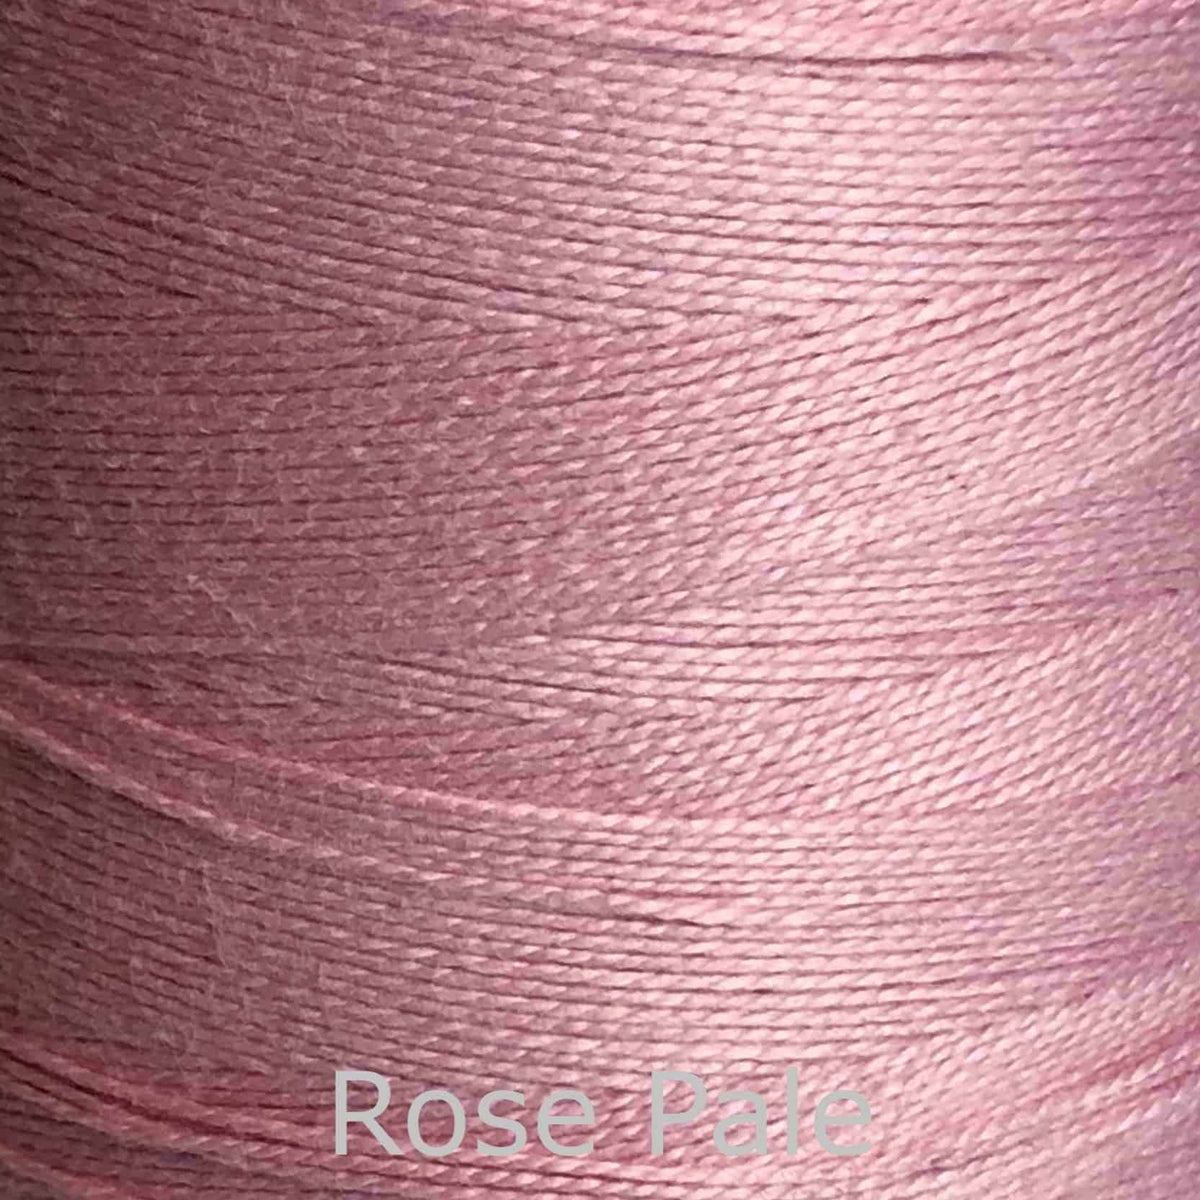 16/2 cotton weaving yarn rose